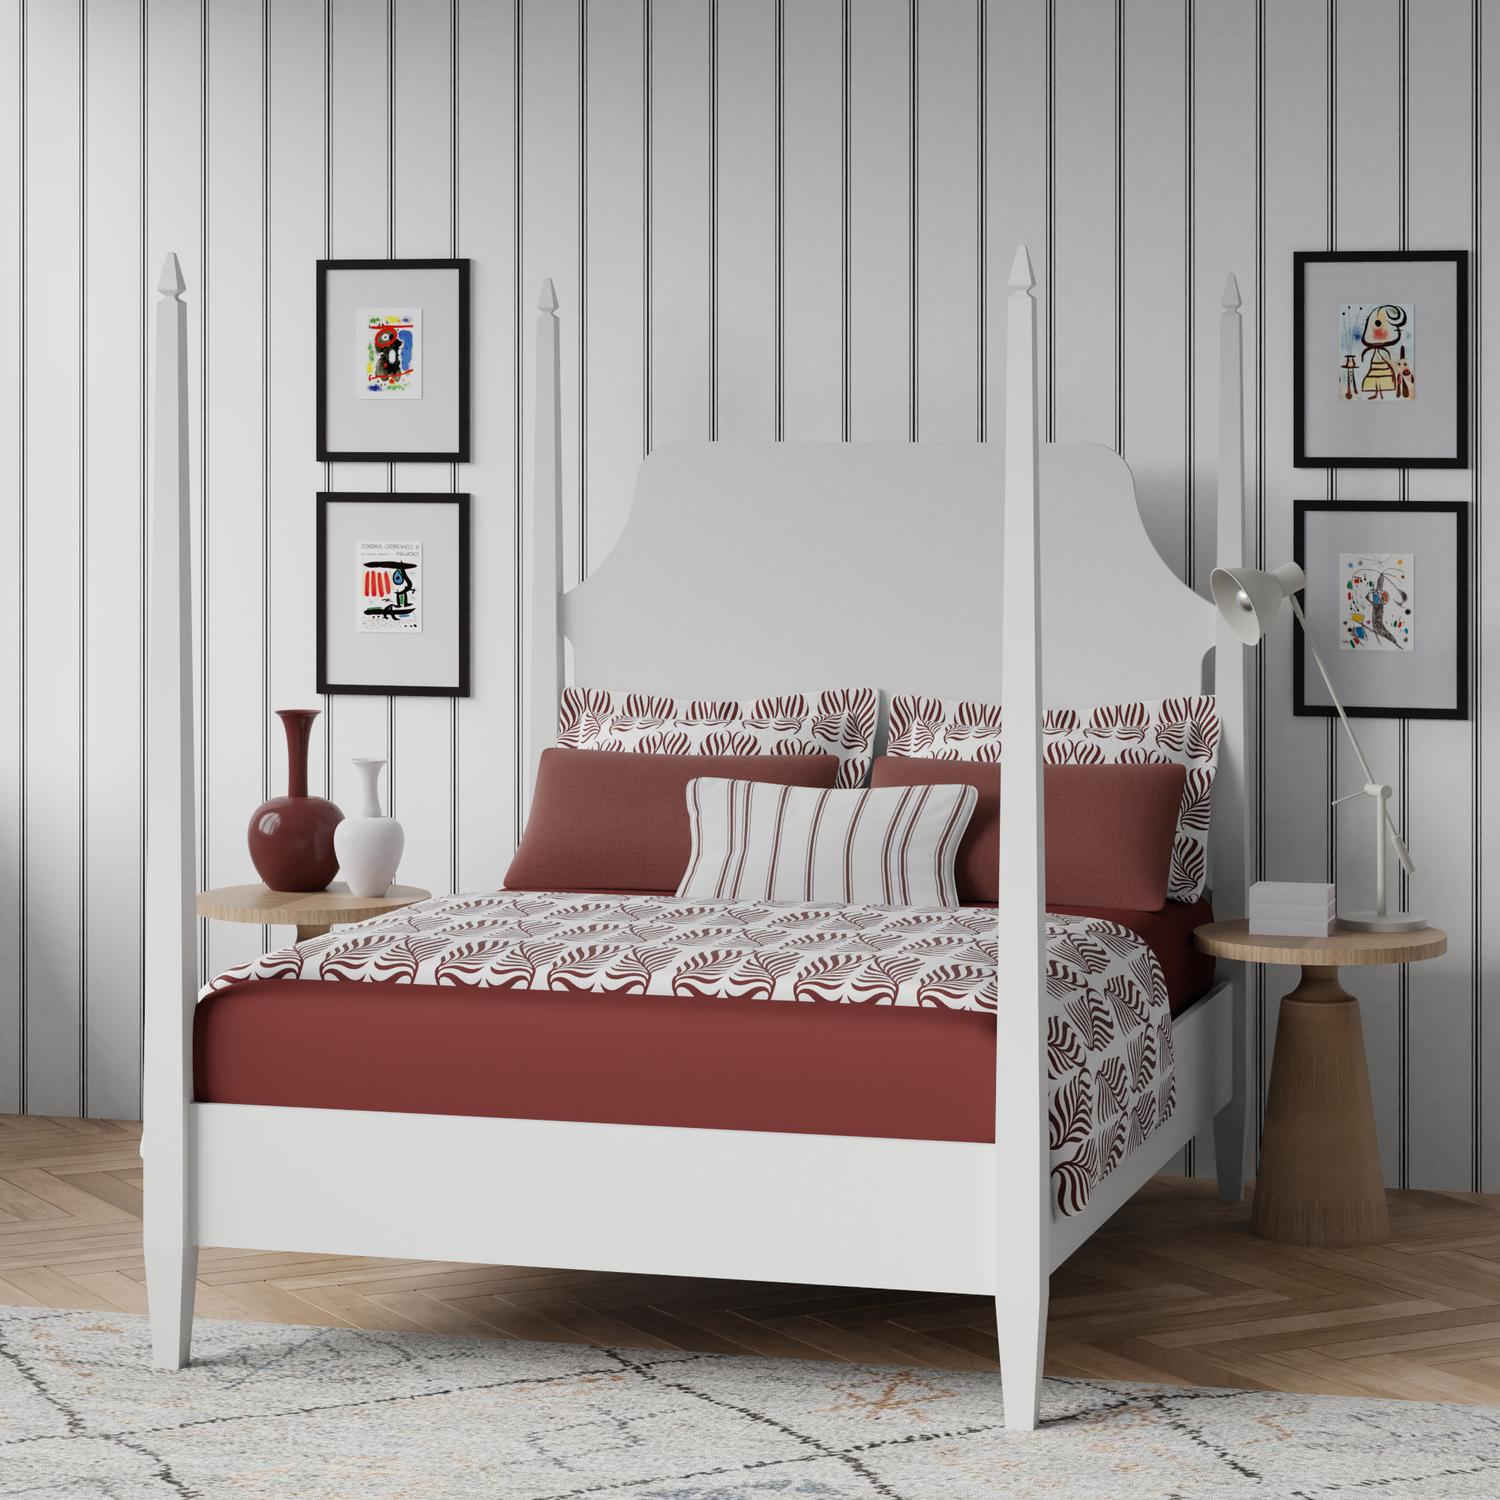 Turner wooden bed - Image 1